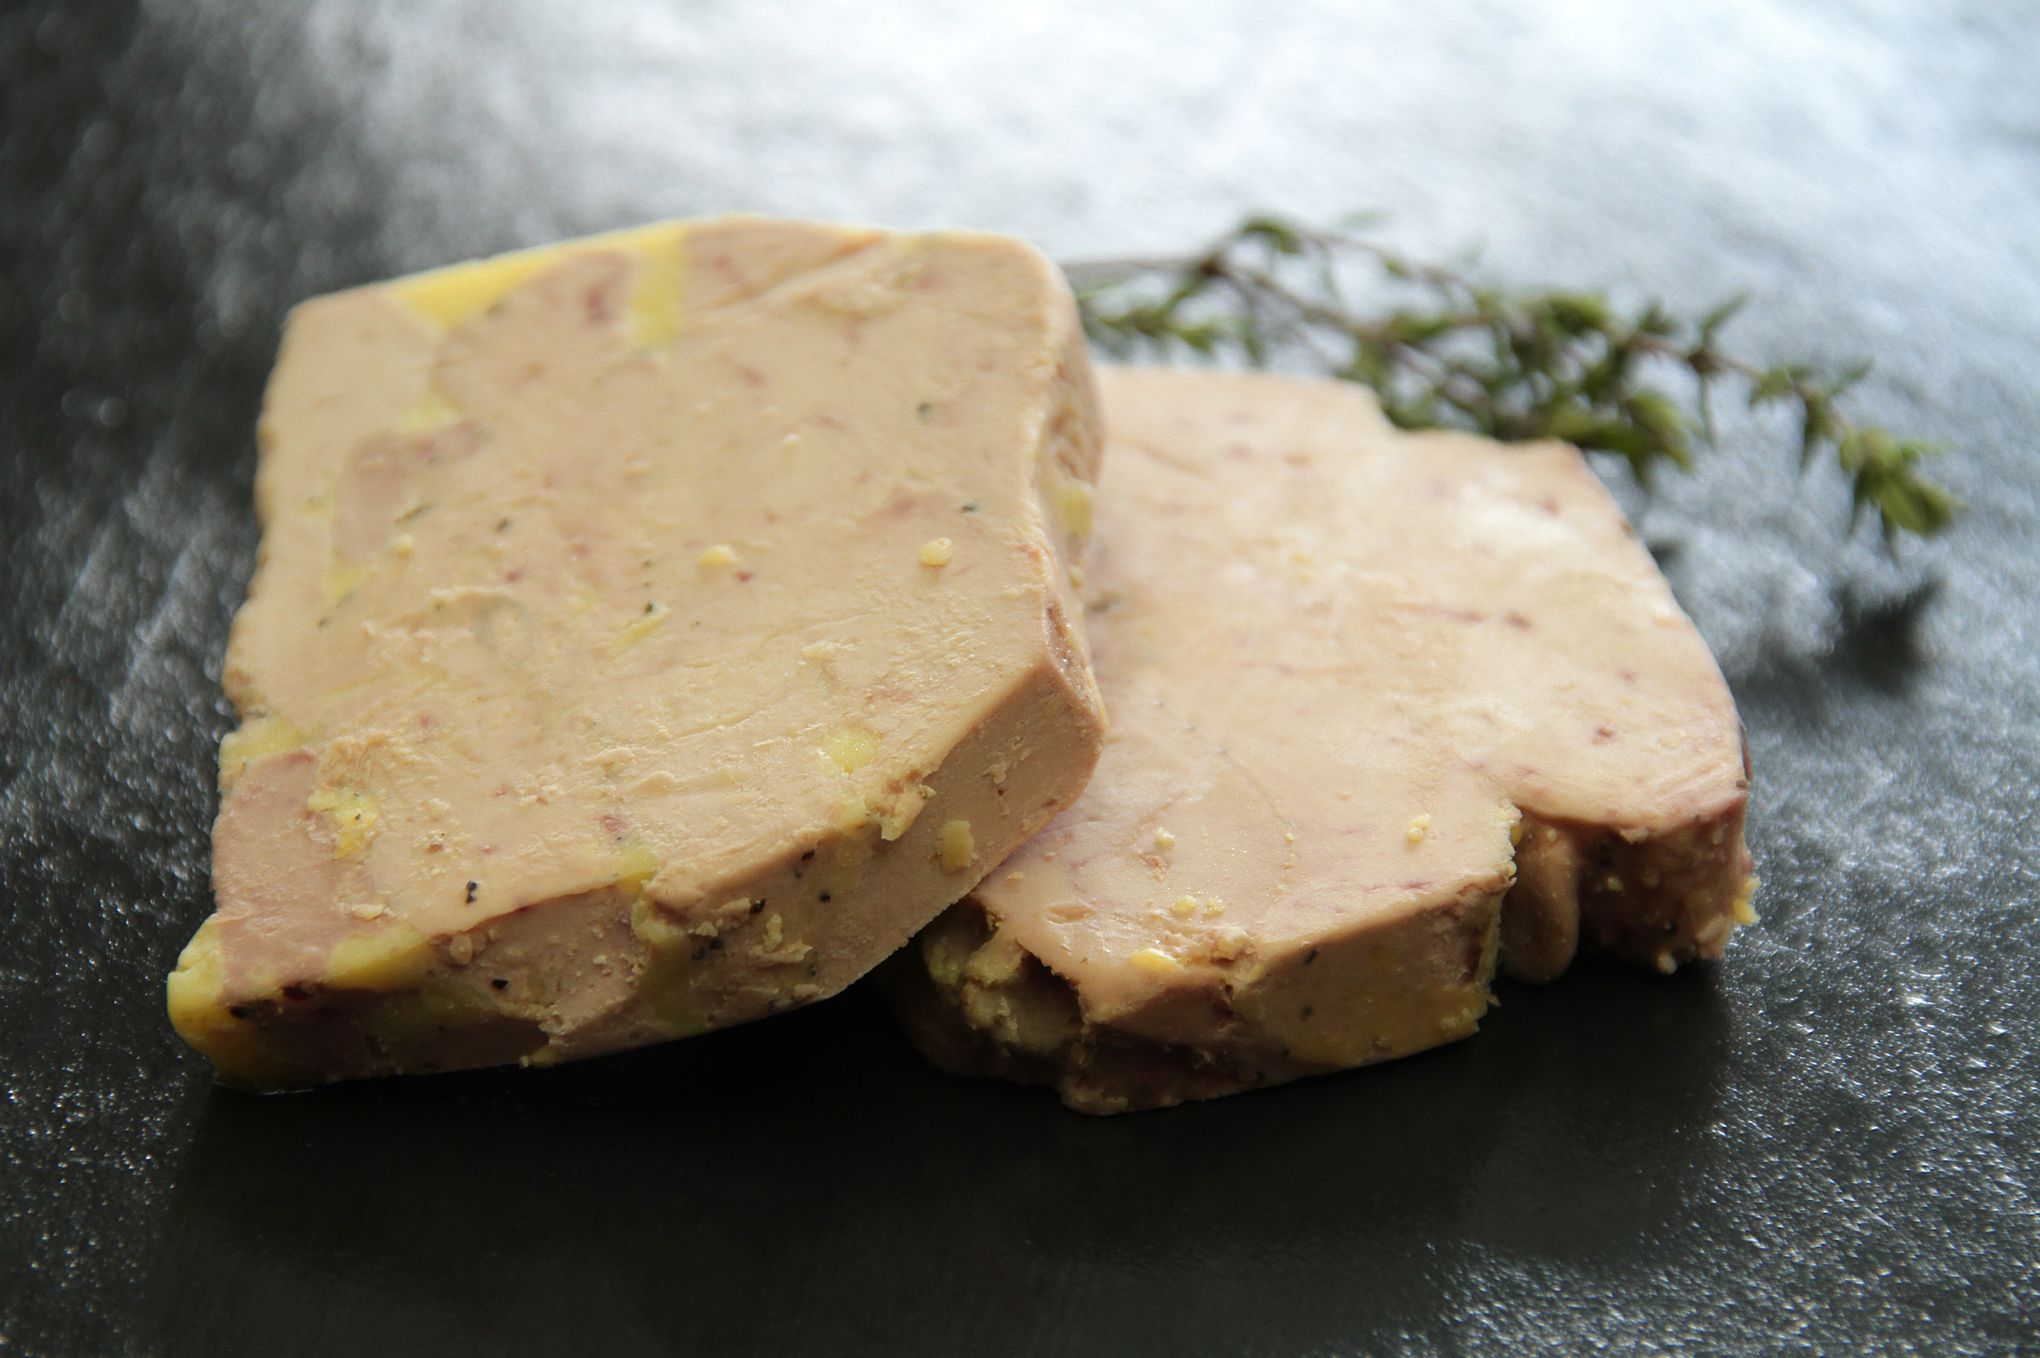 Un chercheur français invente le foie gras sans gavage et le commercialise